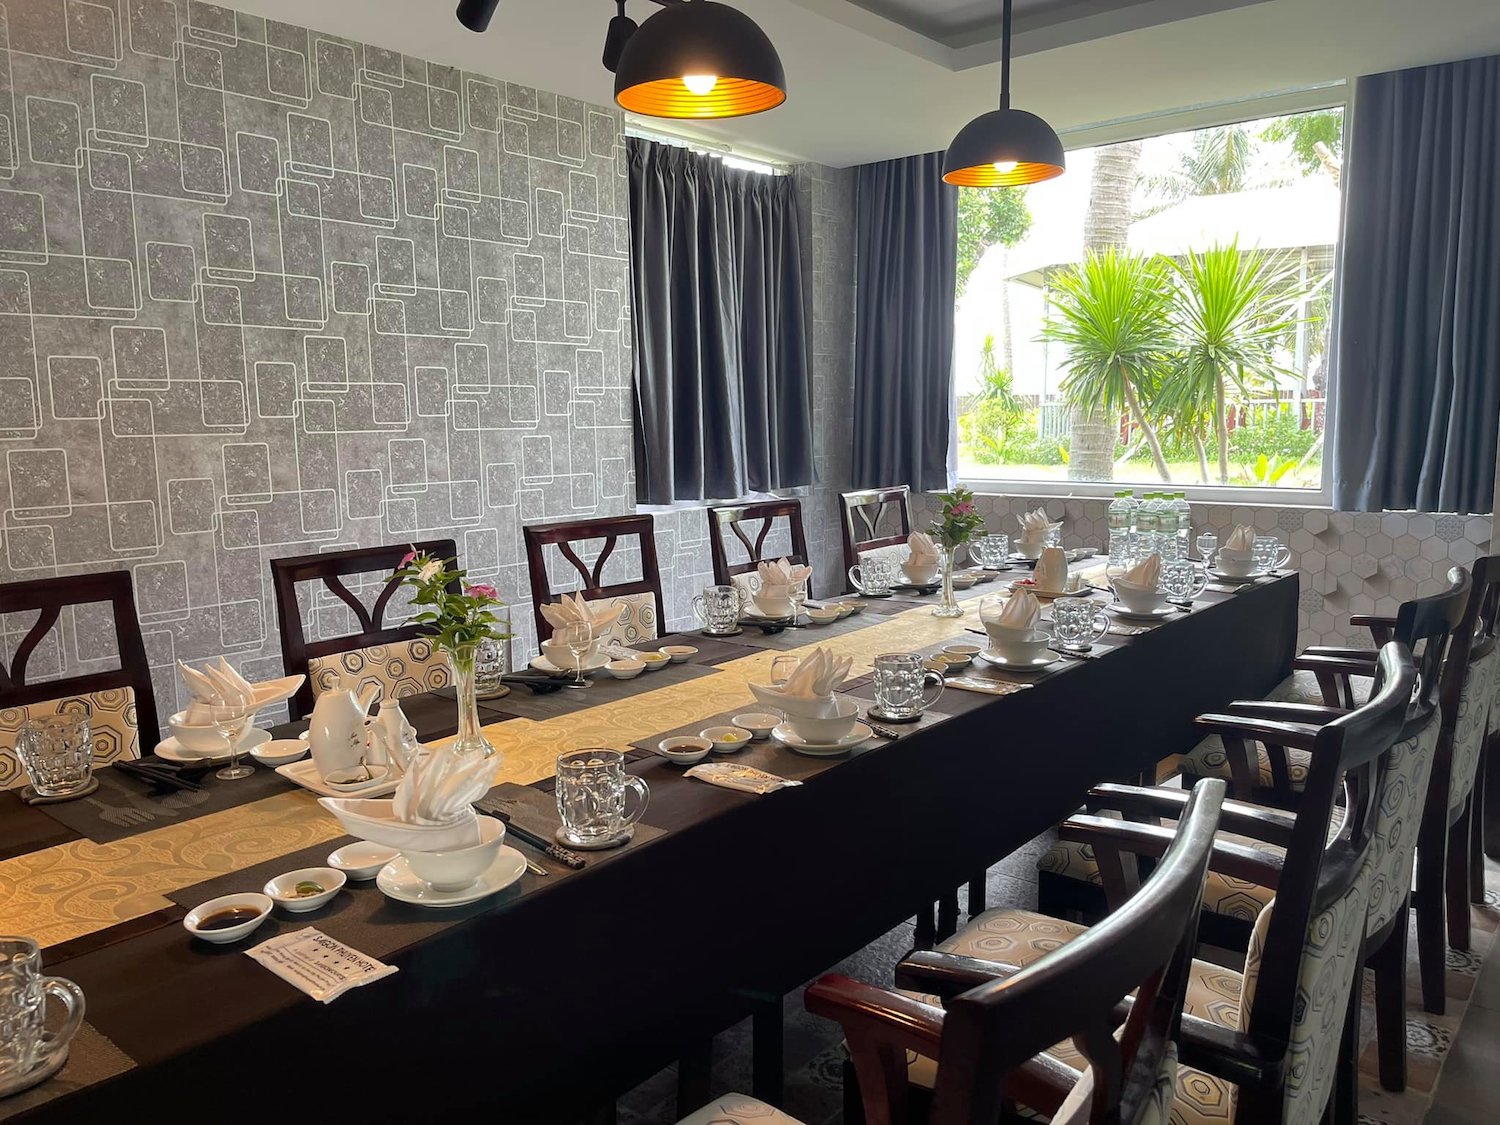 Nhà hàng Gió Chiều Phú Yên - Khám phá ẩm thực làng quê trong lòng xứ hoa vàng cỏ xanh 8